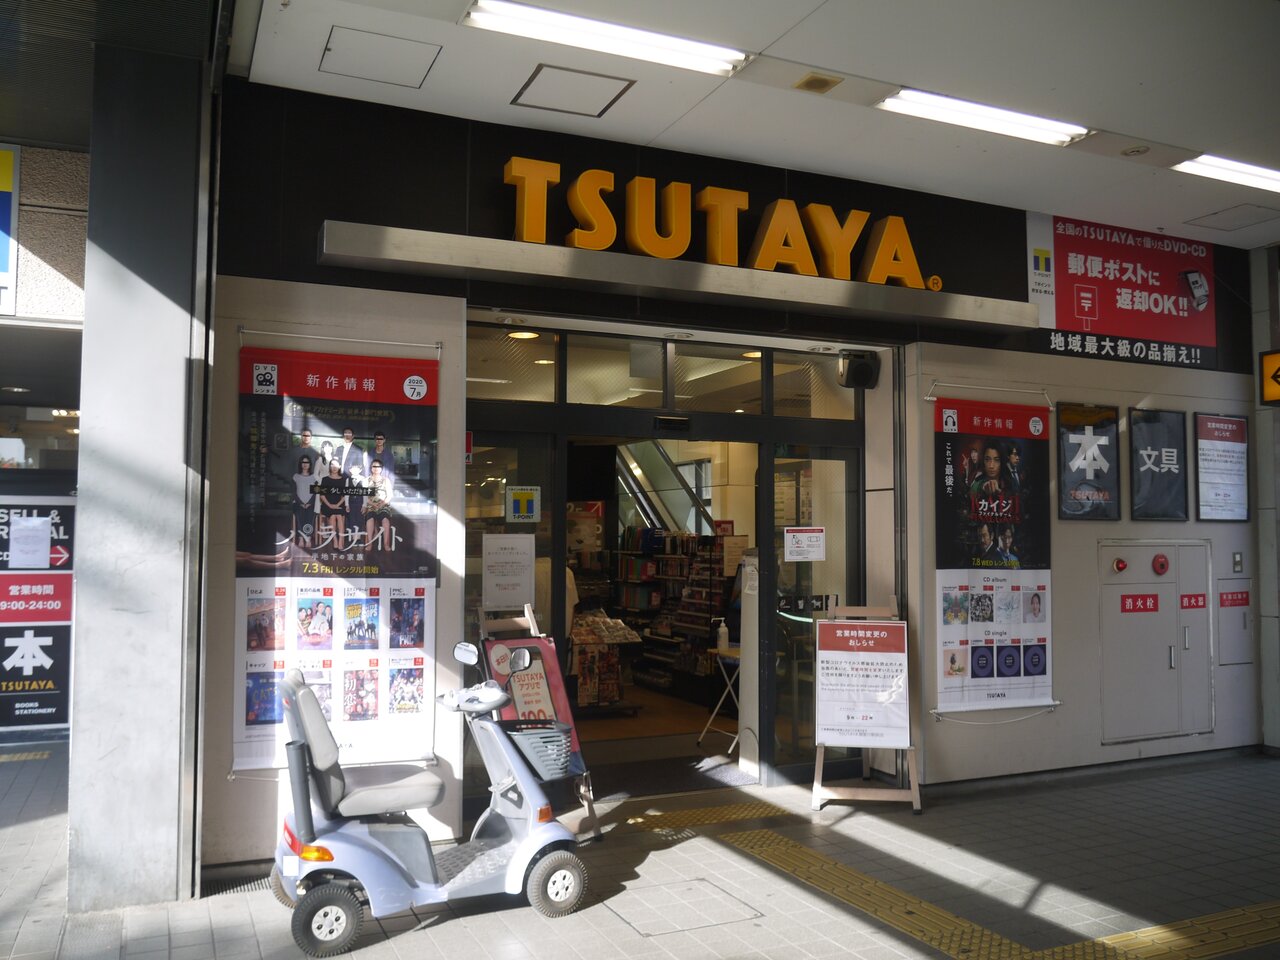 Tsutaya寝屋川駅前店が7 31 金 の閉店を発表 駅北側の高架下にある全国チェーンの本屋 寝屋川つーしん